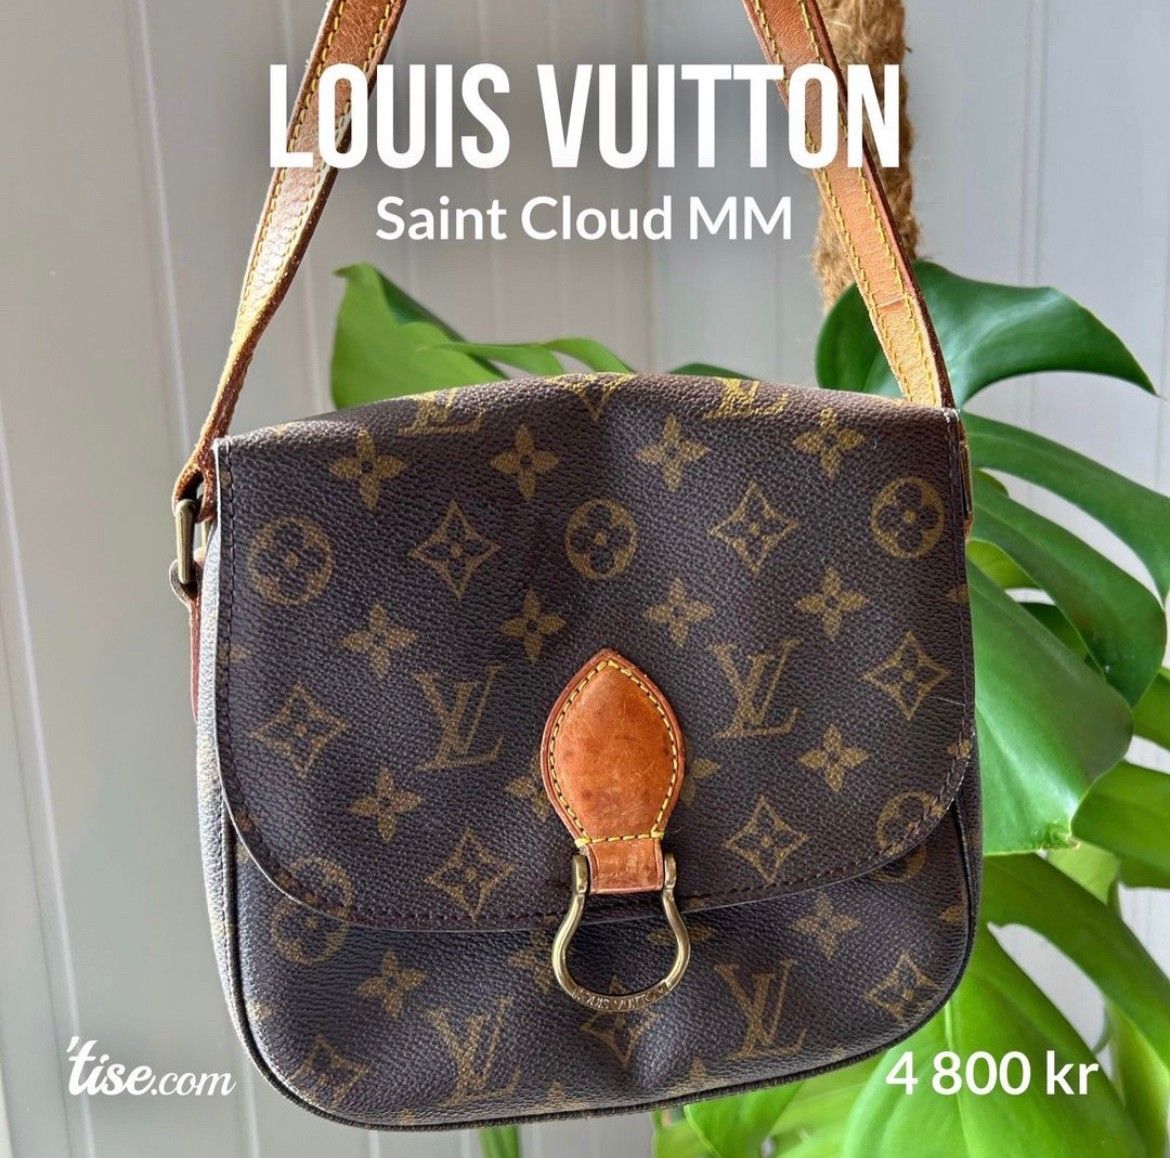 Louis Vuitton Saint Cloud -  Norway